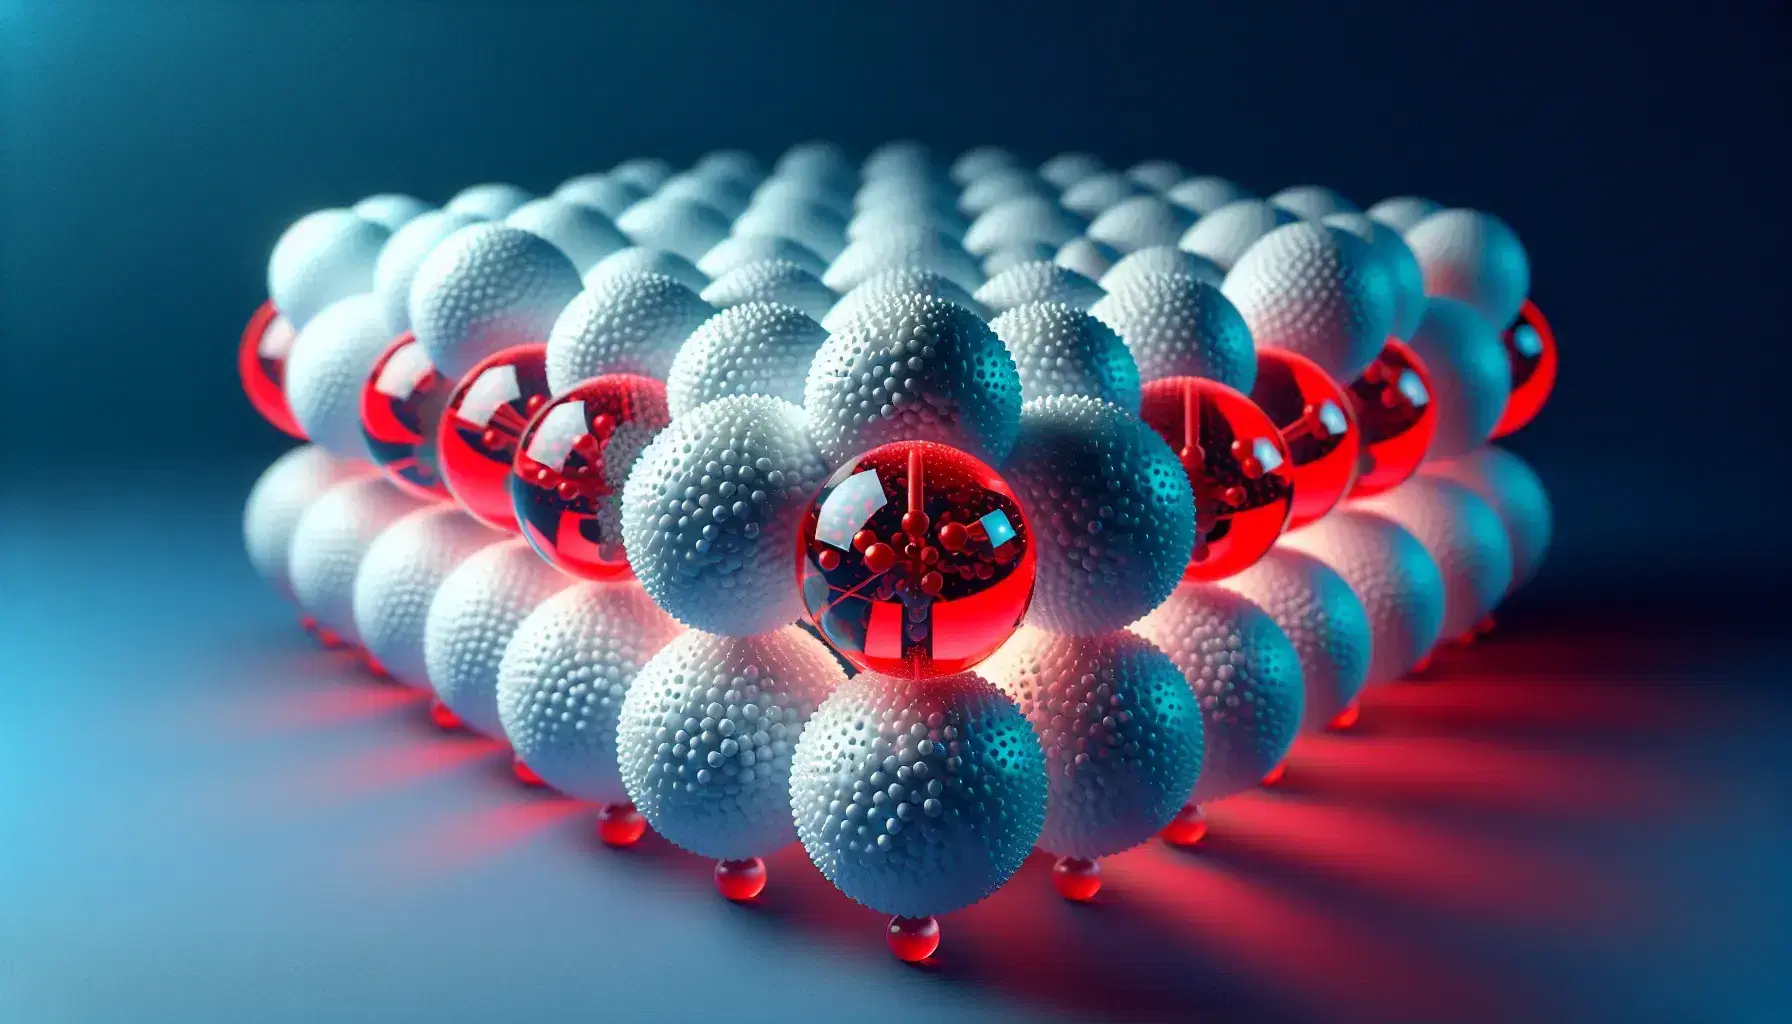 Estructura molecular del agua con esferas rojas representando oxígenos y blancas hidrógenos enlazados en ángulo, sobre fondo azul.